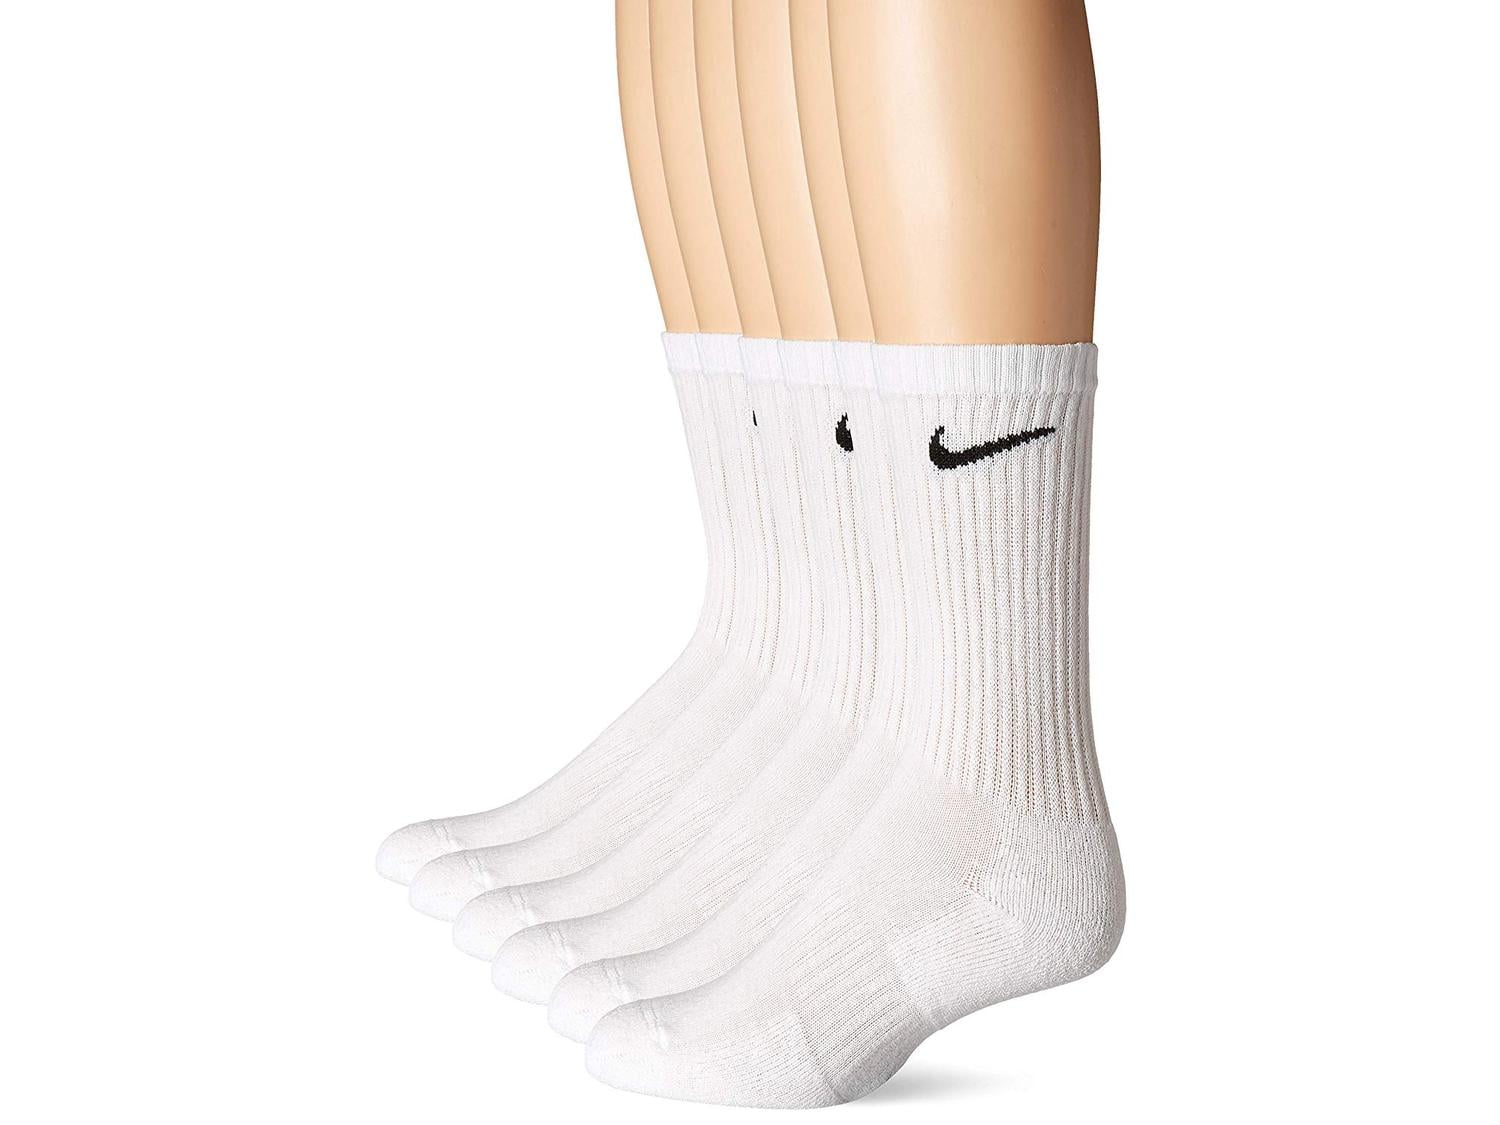 Nike Everyday Cushion Crew Socks, Unisex Nike Socks,, White/Black, Size  Large 